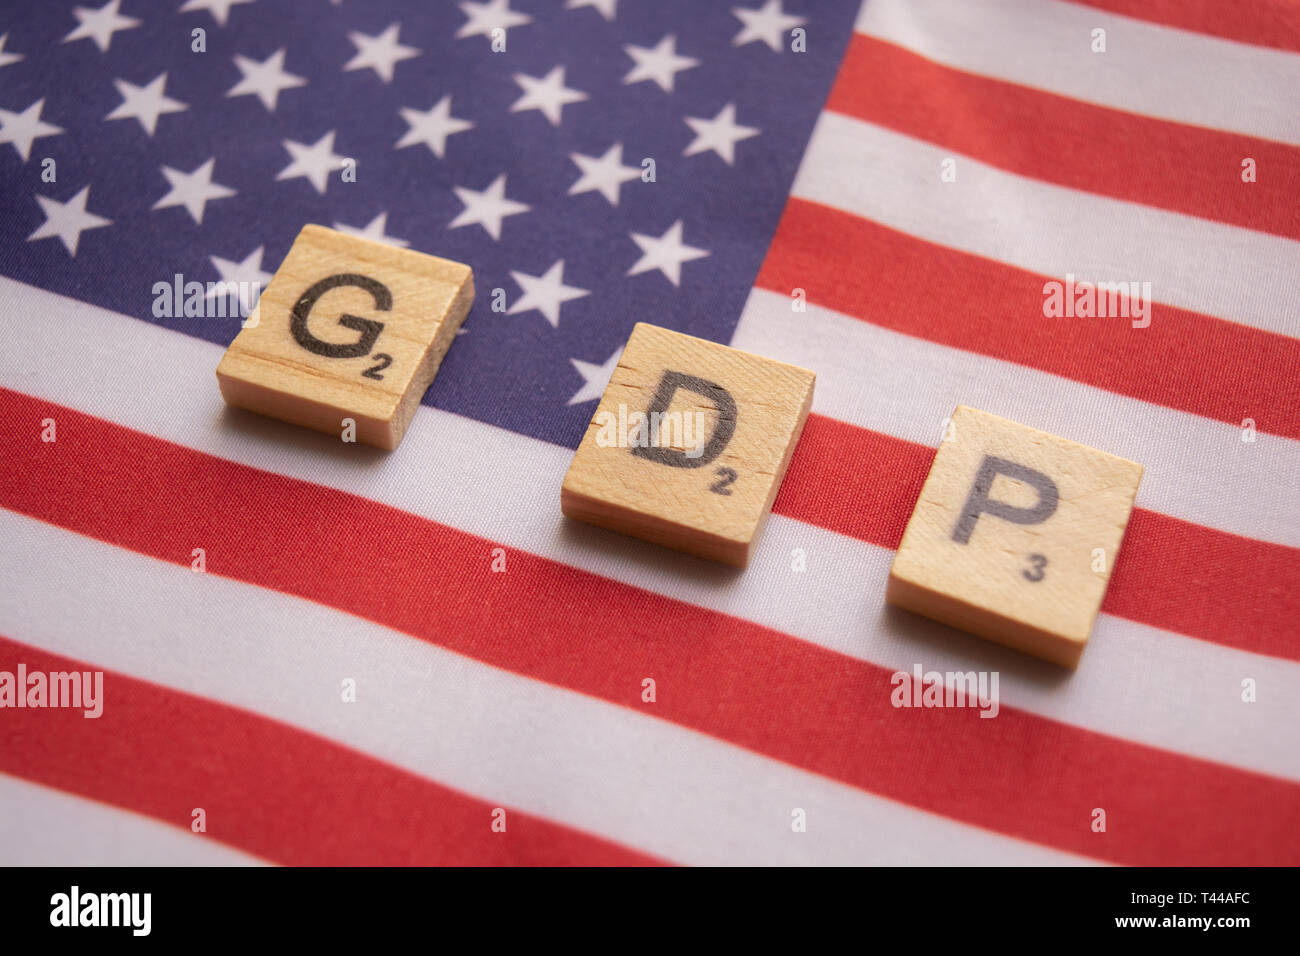 Concetto delle finanze, il PIL o prodotto interno lordo blocco di legno lettere sul dollaro Usa bandiera. Foto Stock